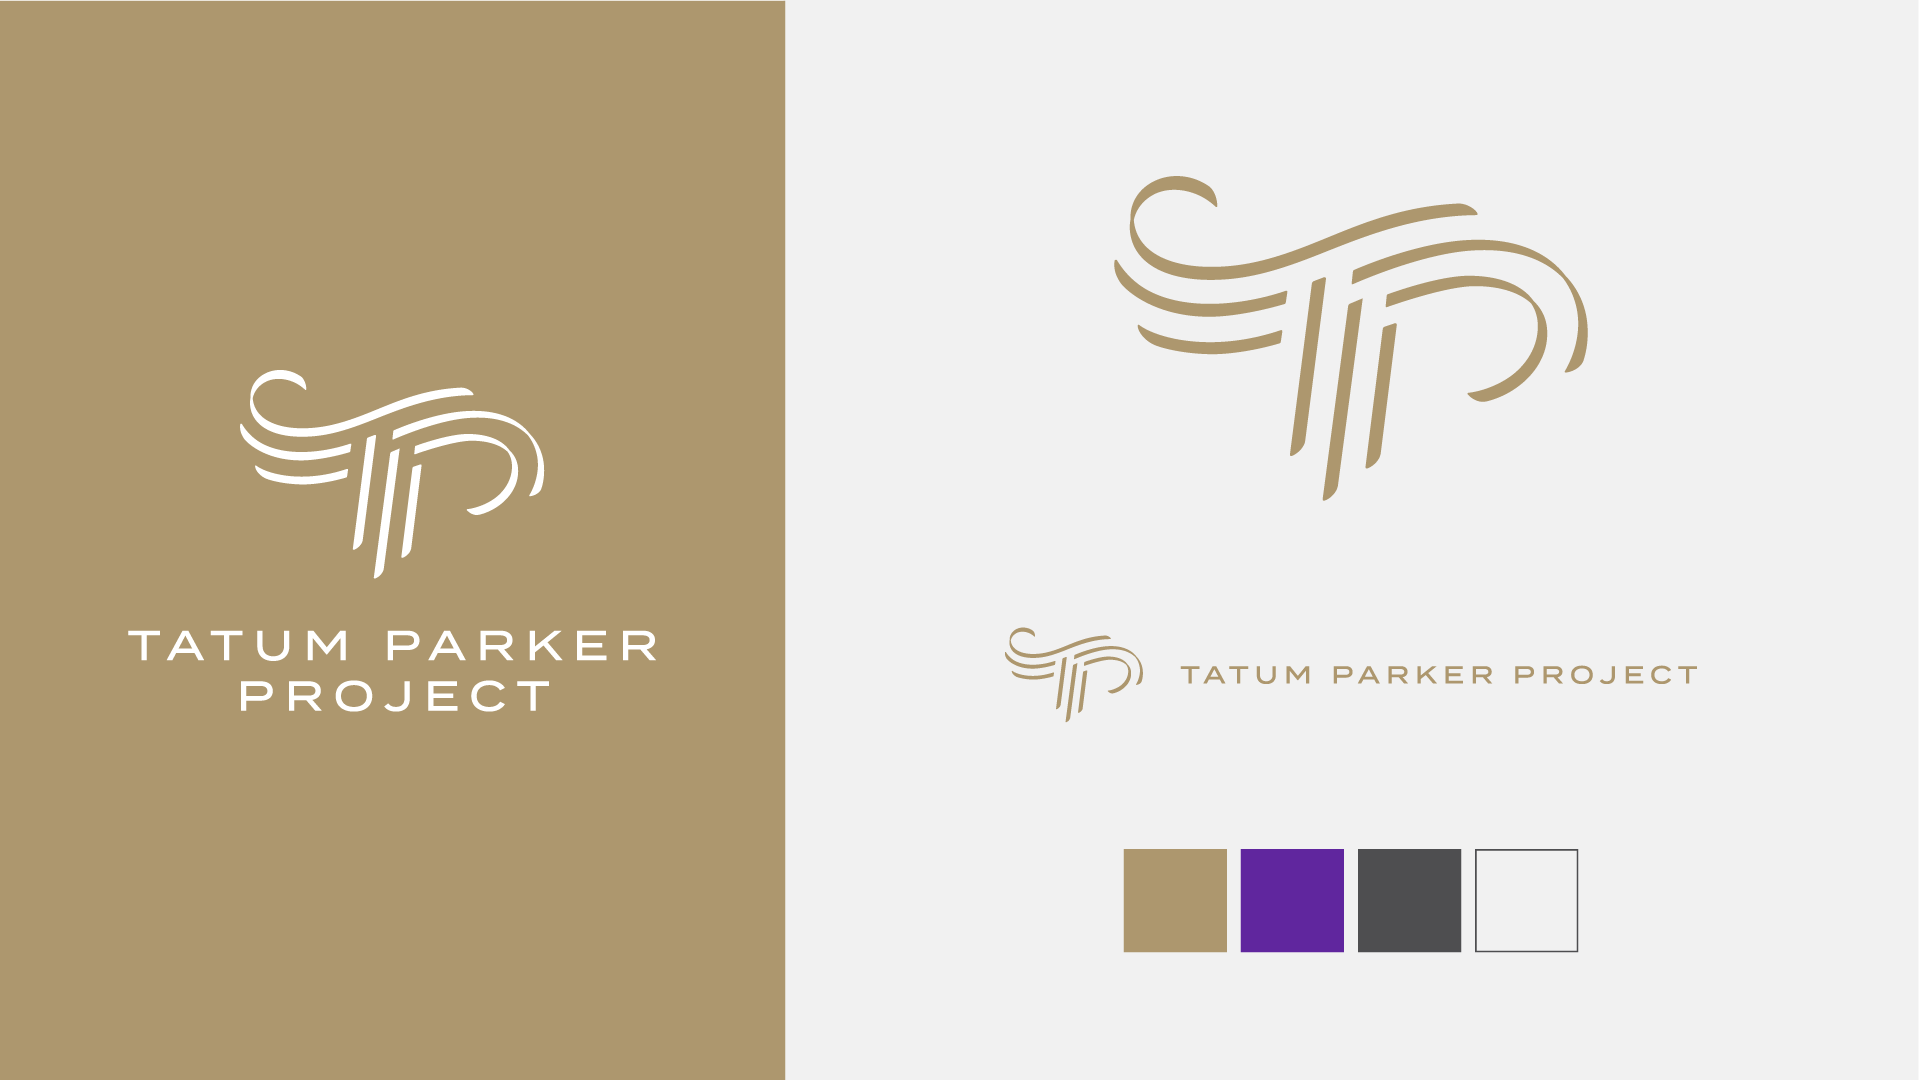 Tatum Parker Project Brand Elements